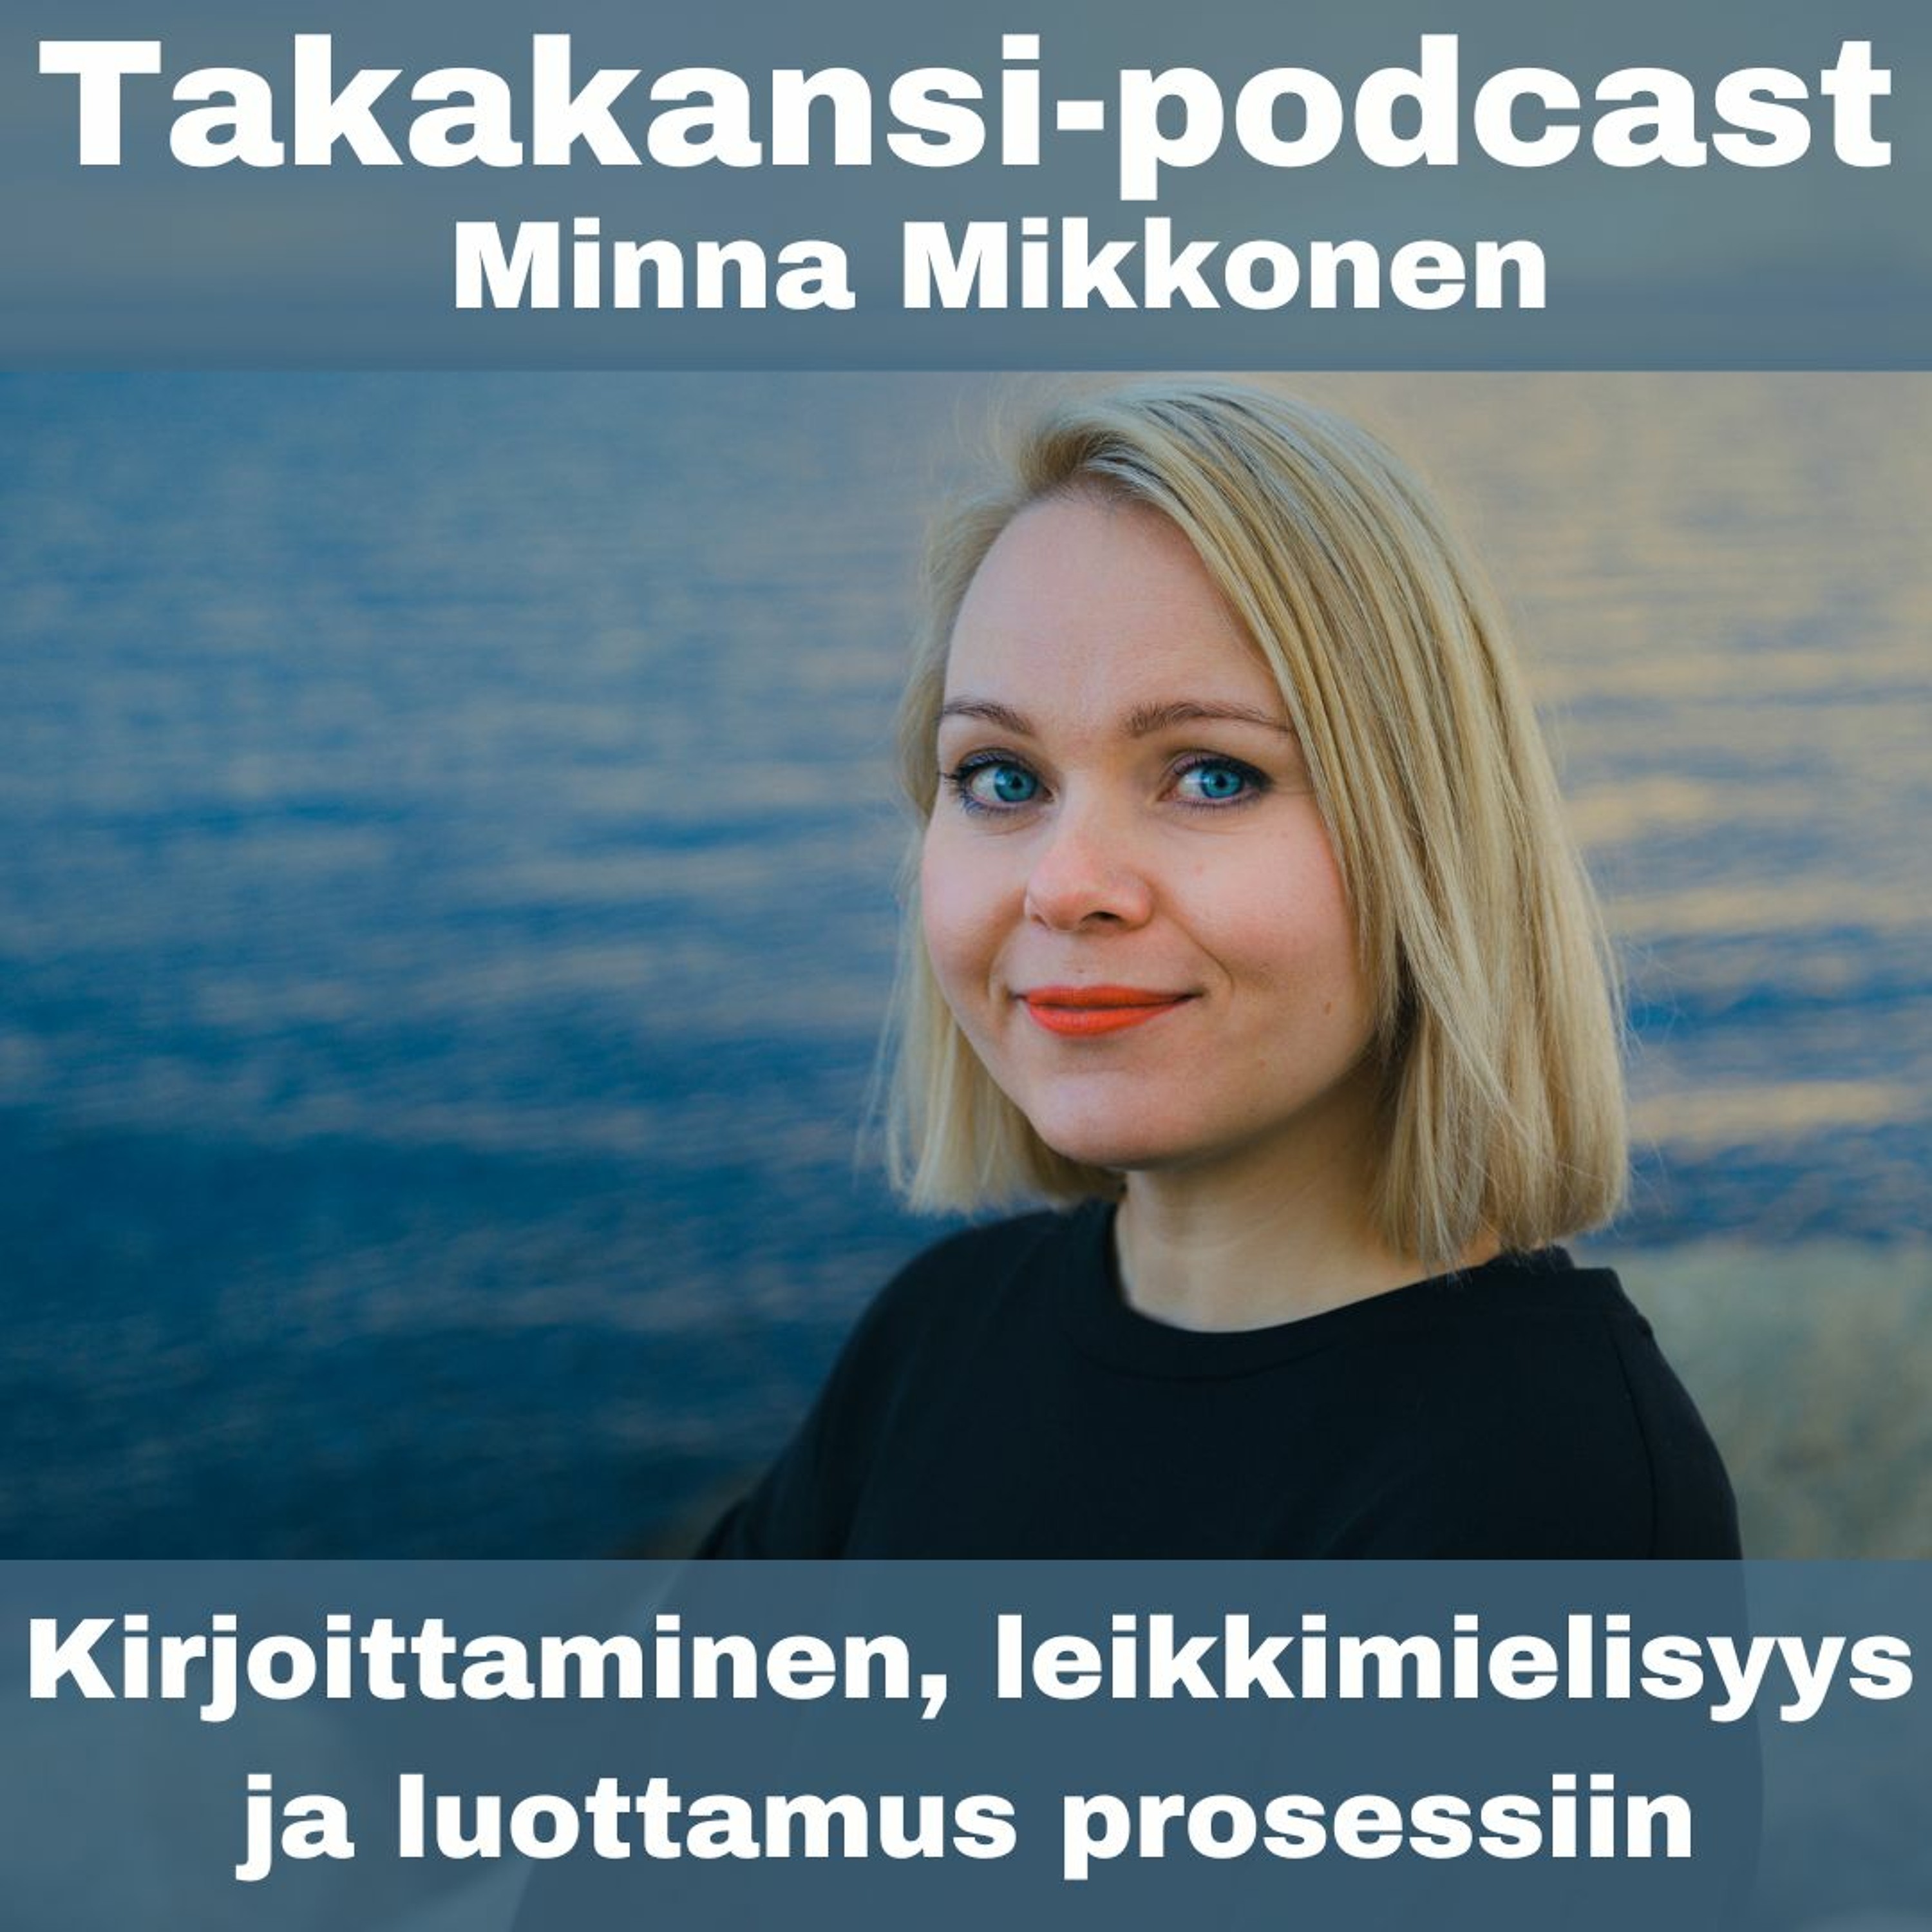 Minna Mikkonen - Kirjoittaminen, leikkimielisyys ja luottamus prosessiin